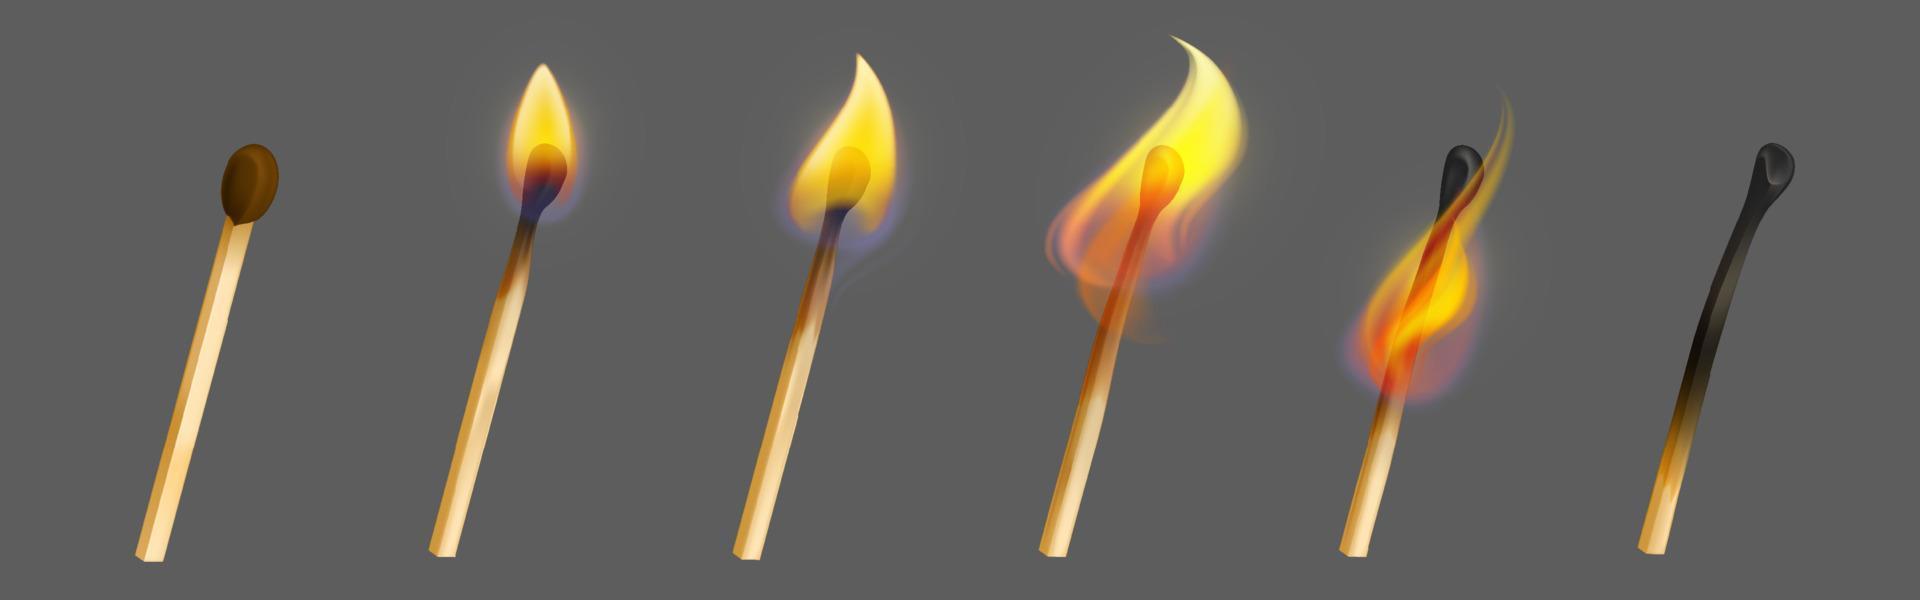 Streichholz mit Feuer in verschiedenen Verbrennungsstadien vektor